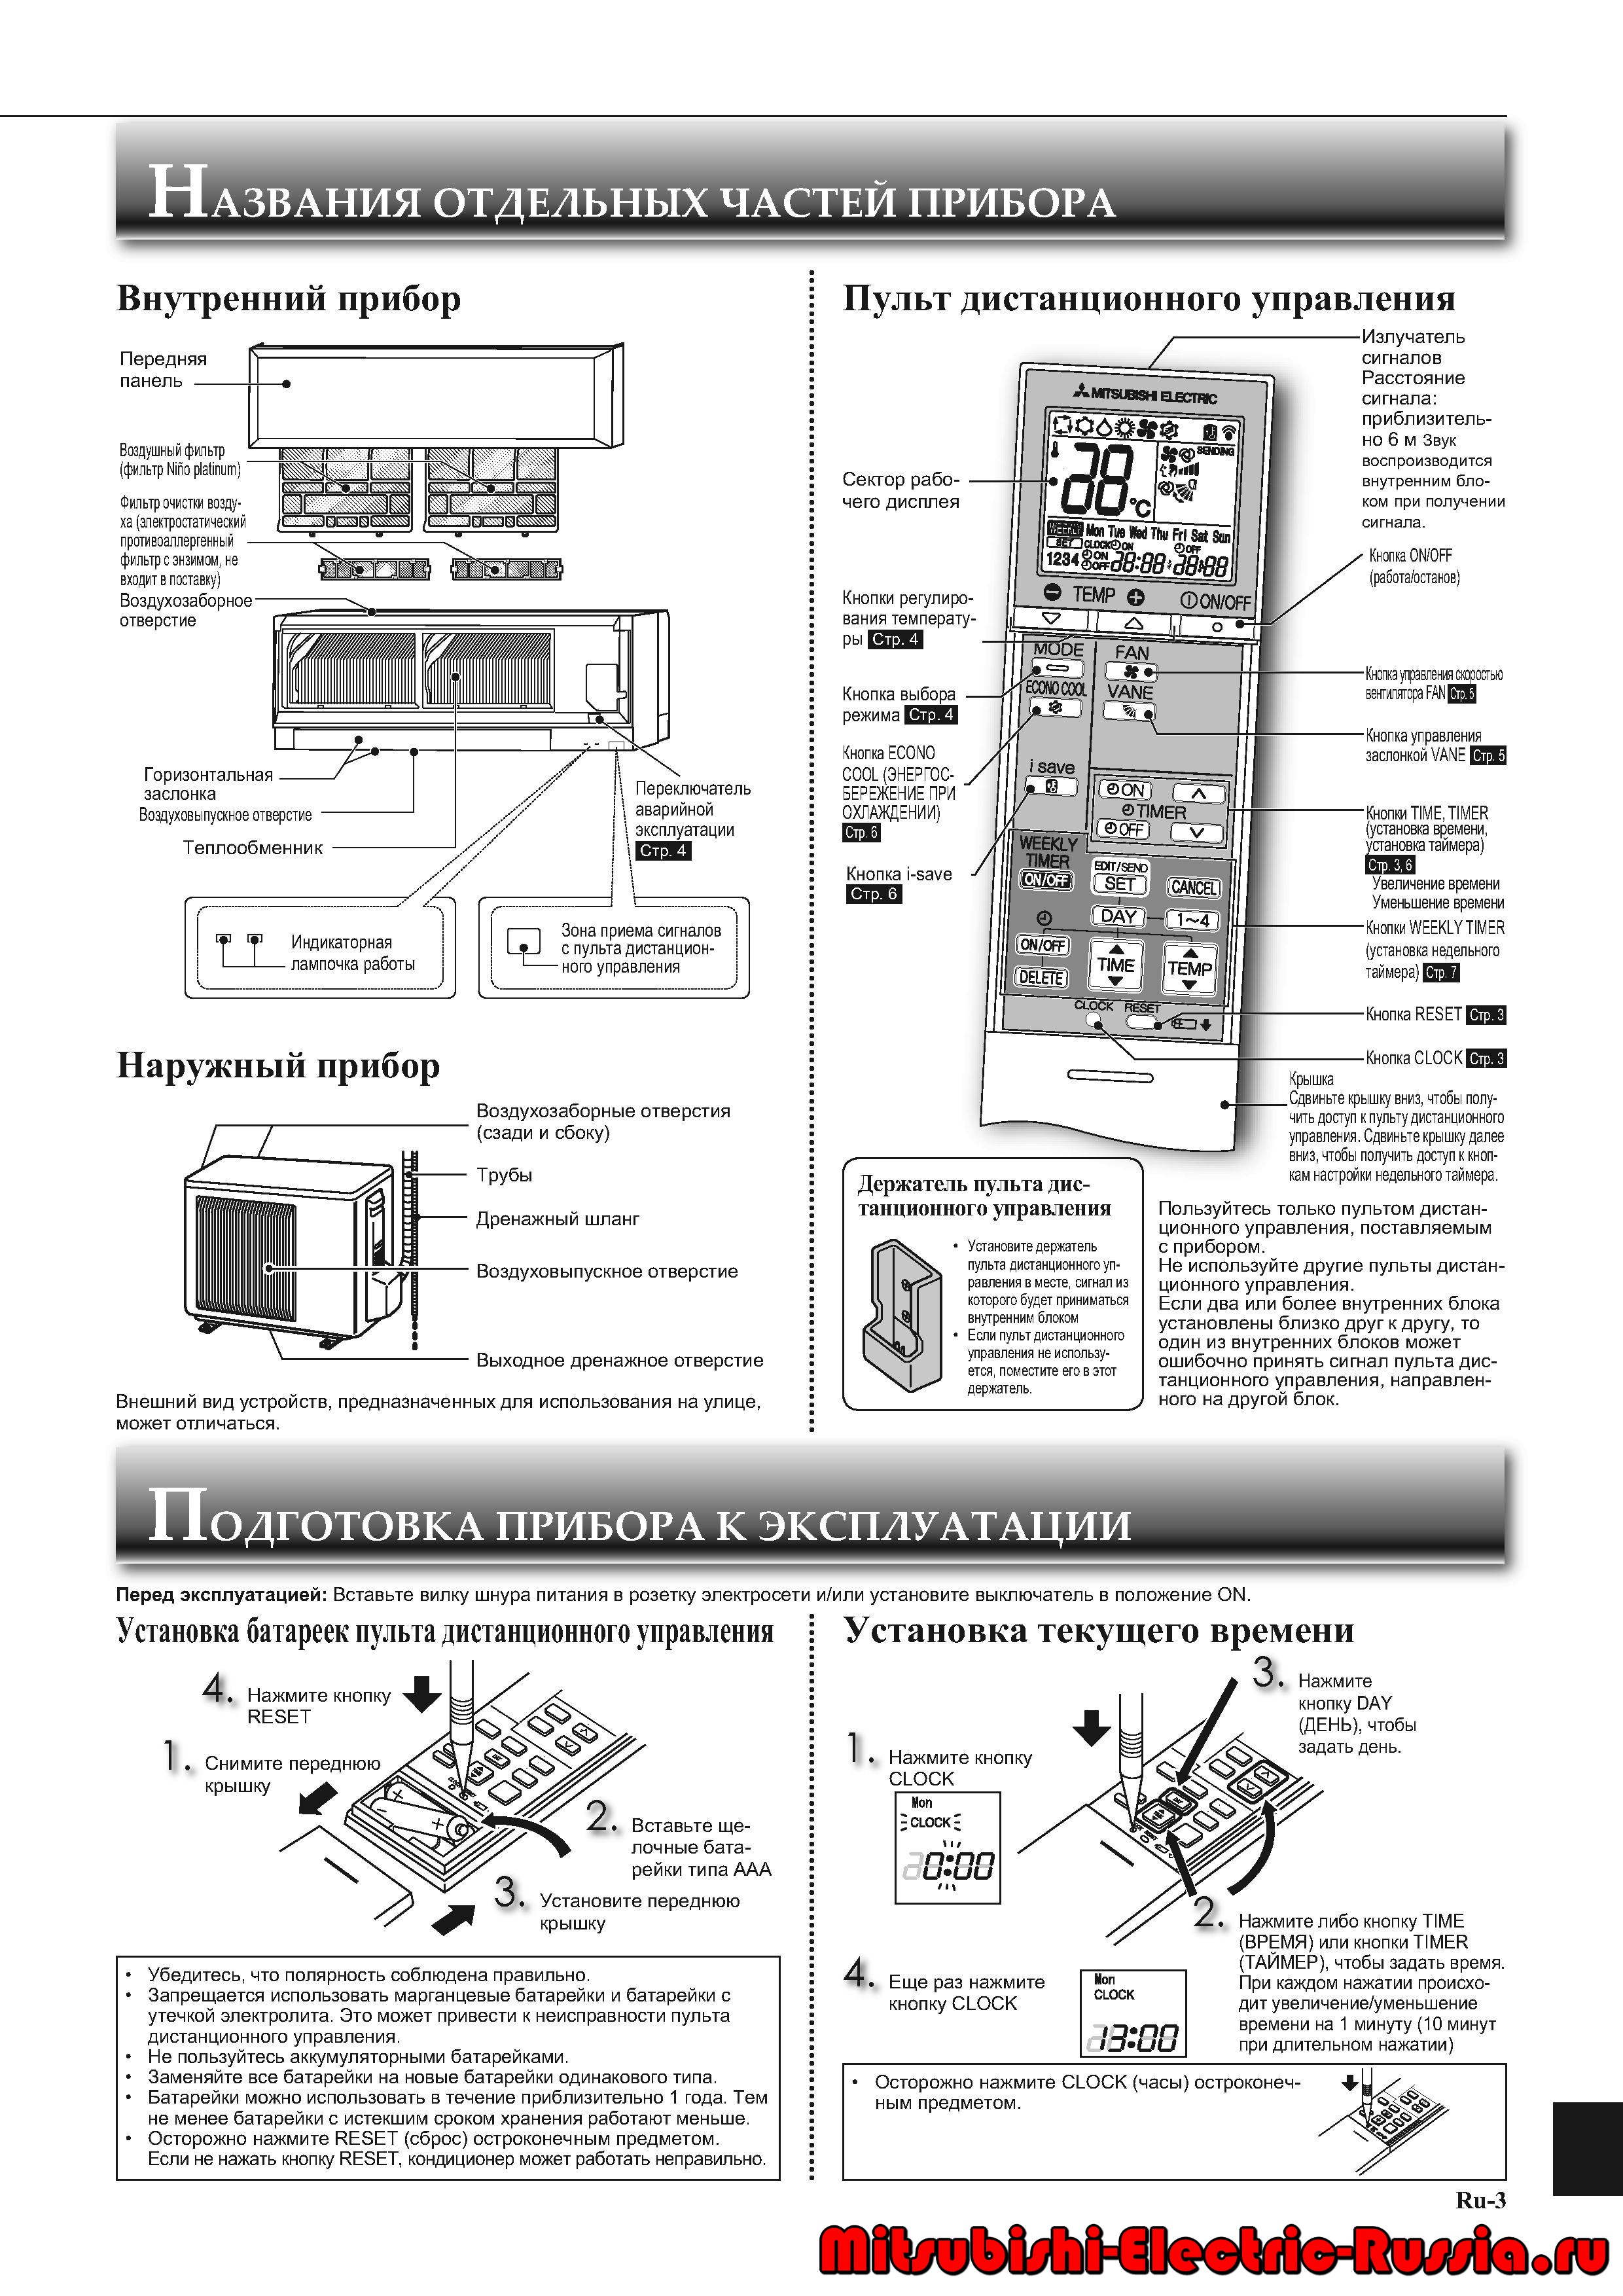 Обзор кондиционеров Mitsubishi Electric: коды ошибок, сравнение инверторных канальных, кассетных и напольно-потолочных моделей